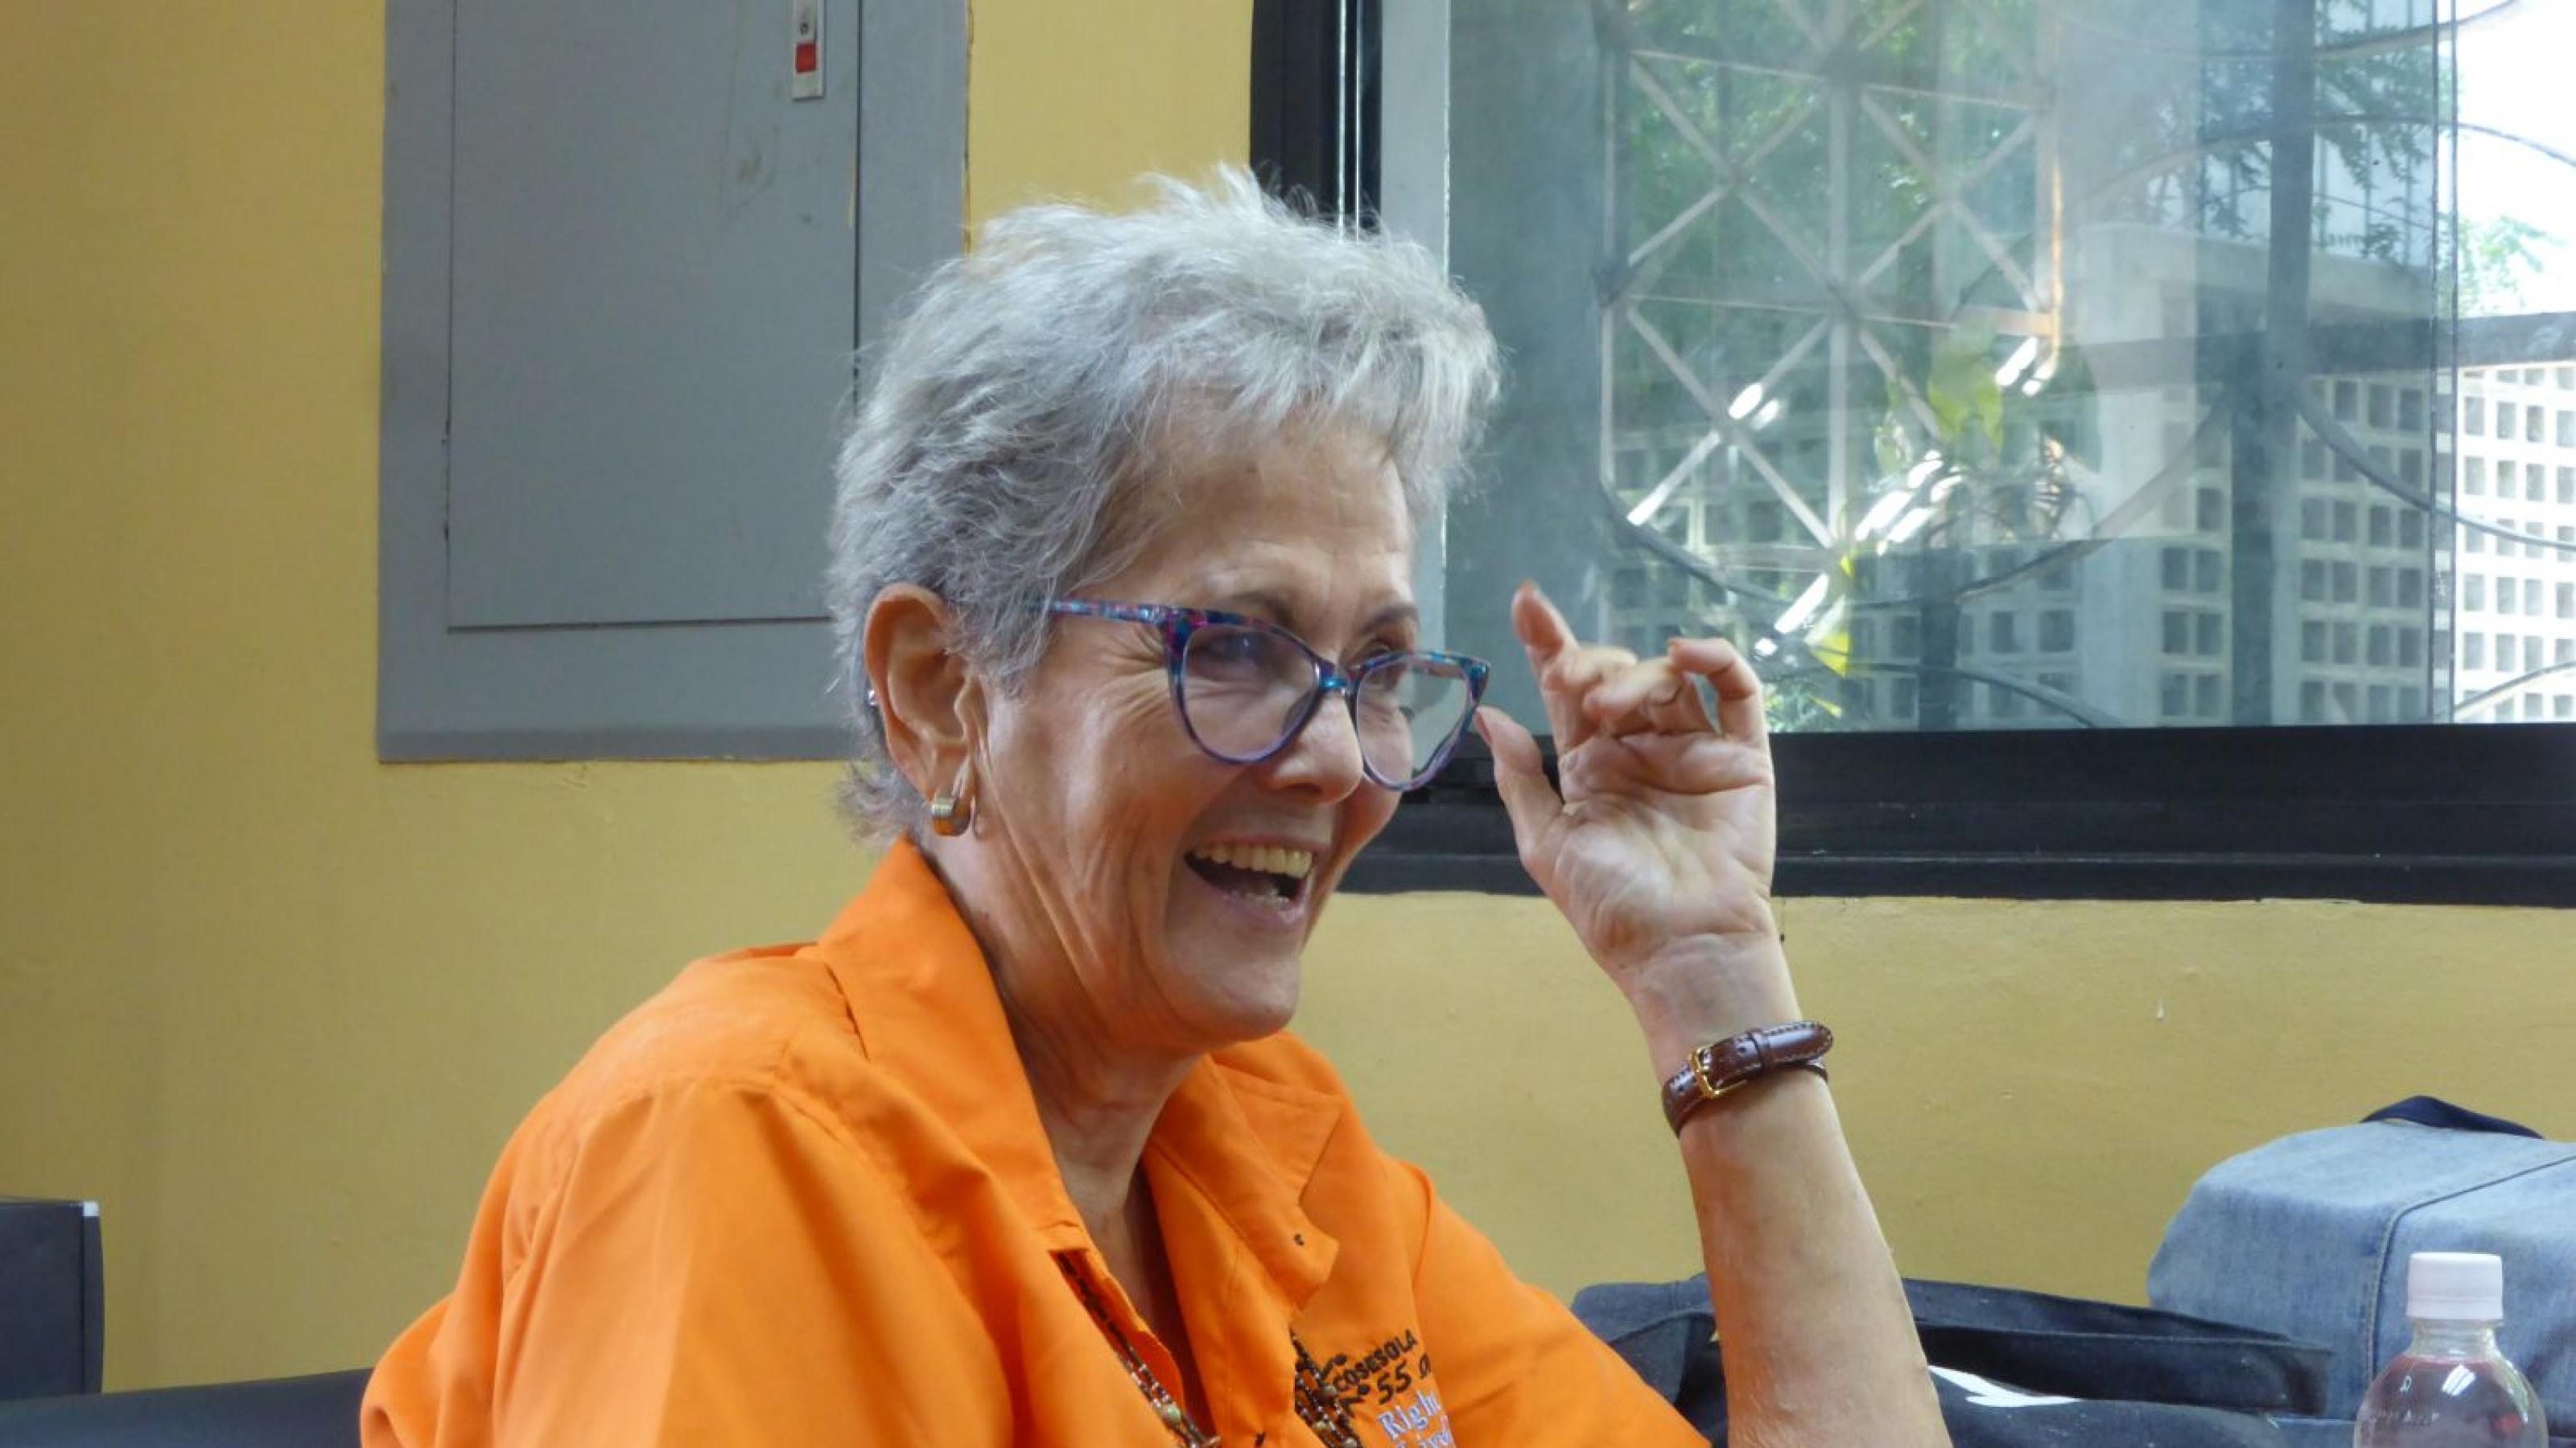 Frau, 70 Jahre alt, kurzes graues Haar, Brille, kurzärmliges orangene Bluse, sitzt an einem Tisch und spricht.